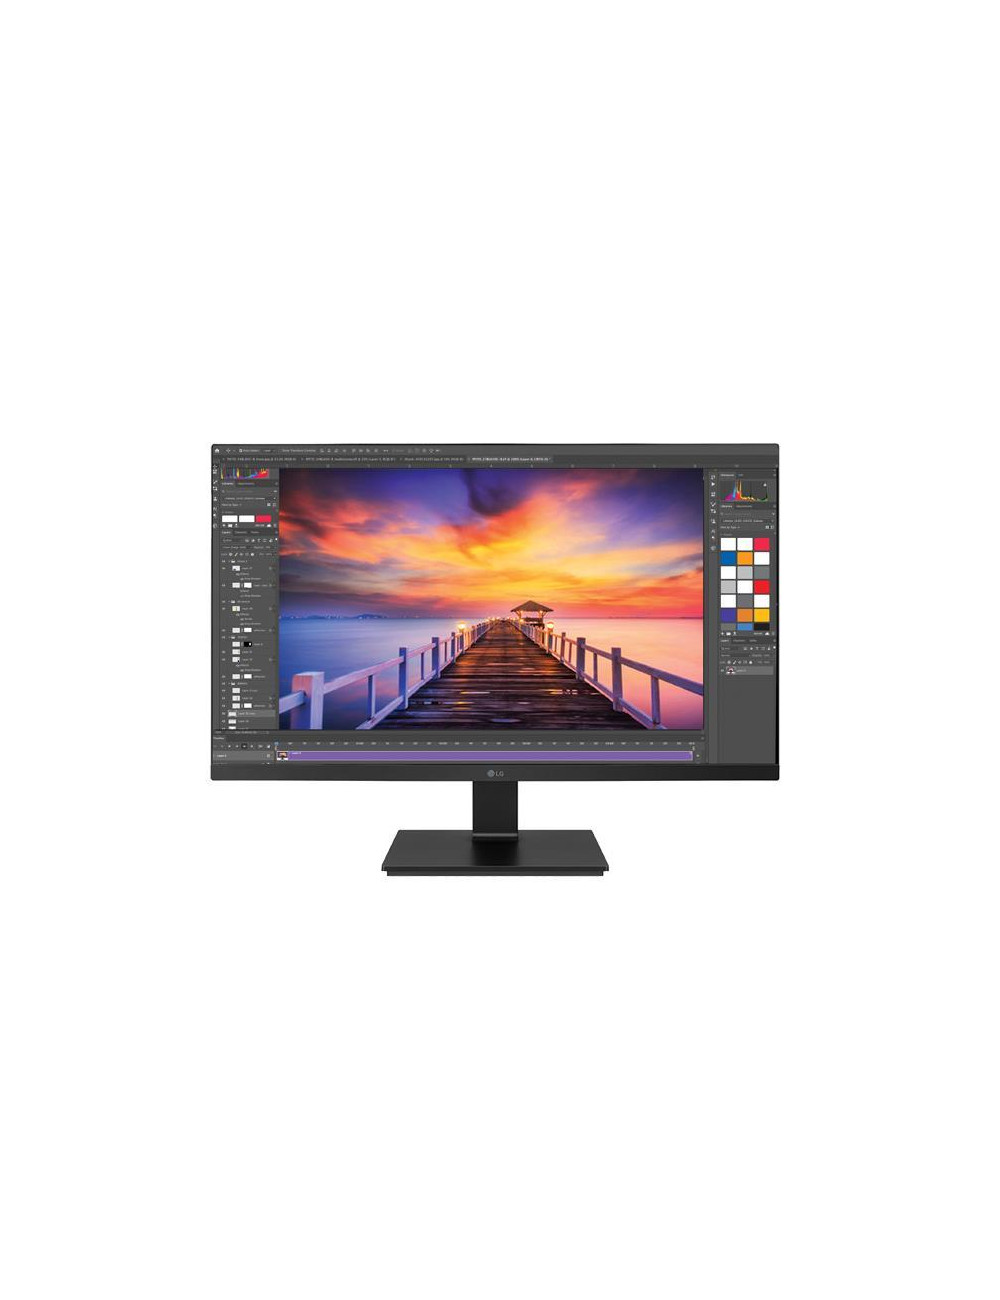 LCD Monitor|LG|27BL650C-B|27"|TV Monitor|Panel IPS|16:9|5 ms|Speakers|Swivel|Pivot|Height adjustable|Tilt|27BL650C-B